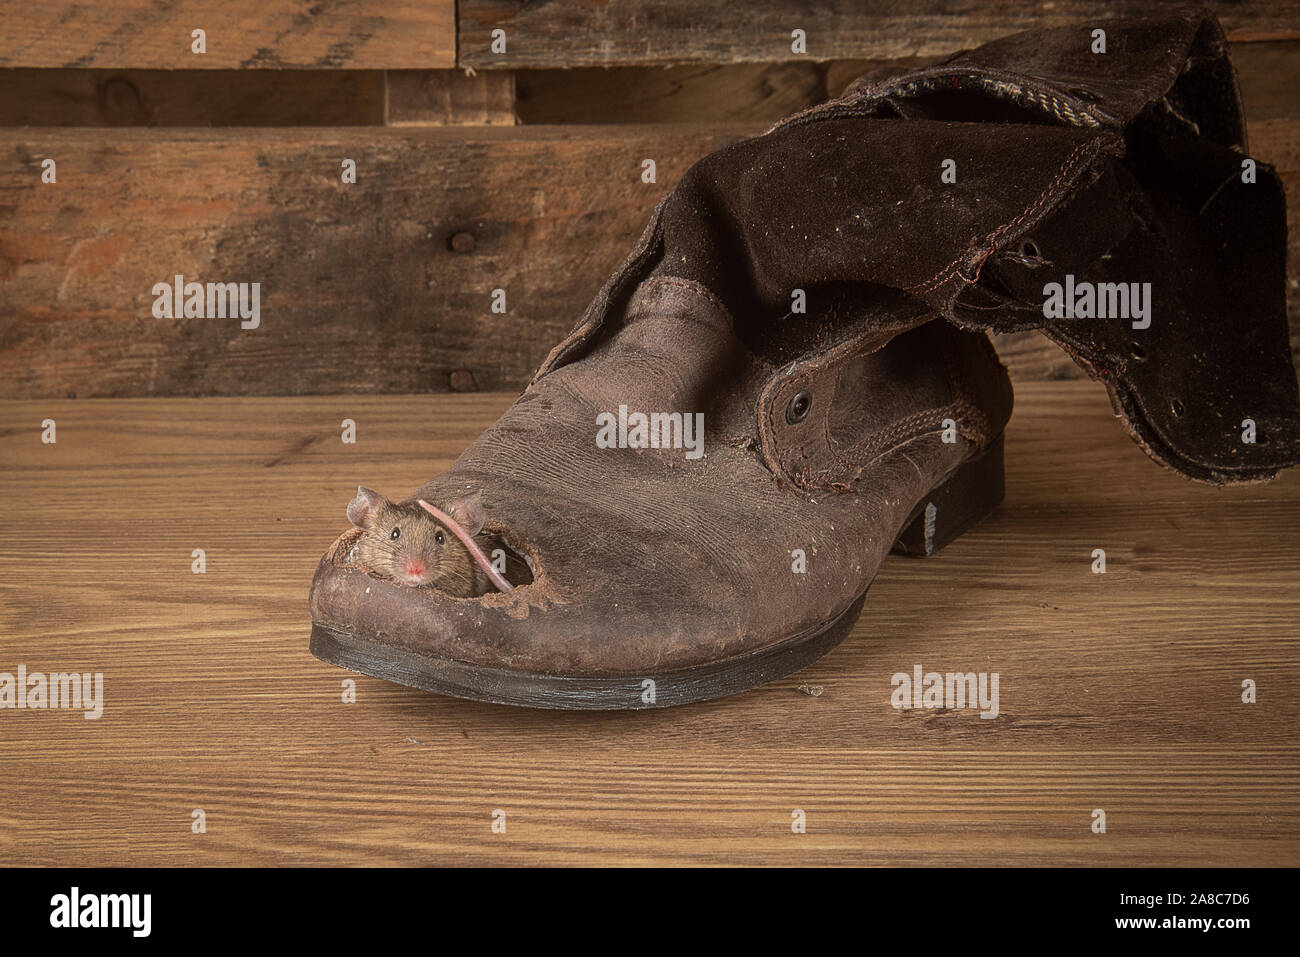 Un piccolo mouse è il peering al di fuori di un foro nella punta di una vecchia pelle un vecchio boot. la base e lo sfondo sono in legno e vi è una copia spazio intorno Foto Stock